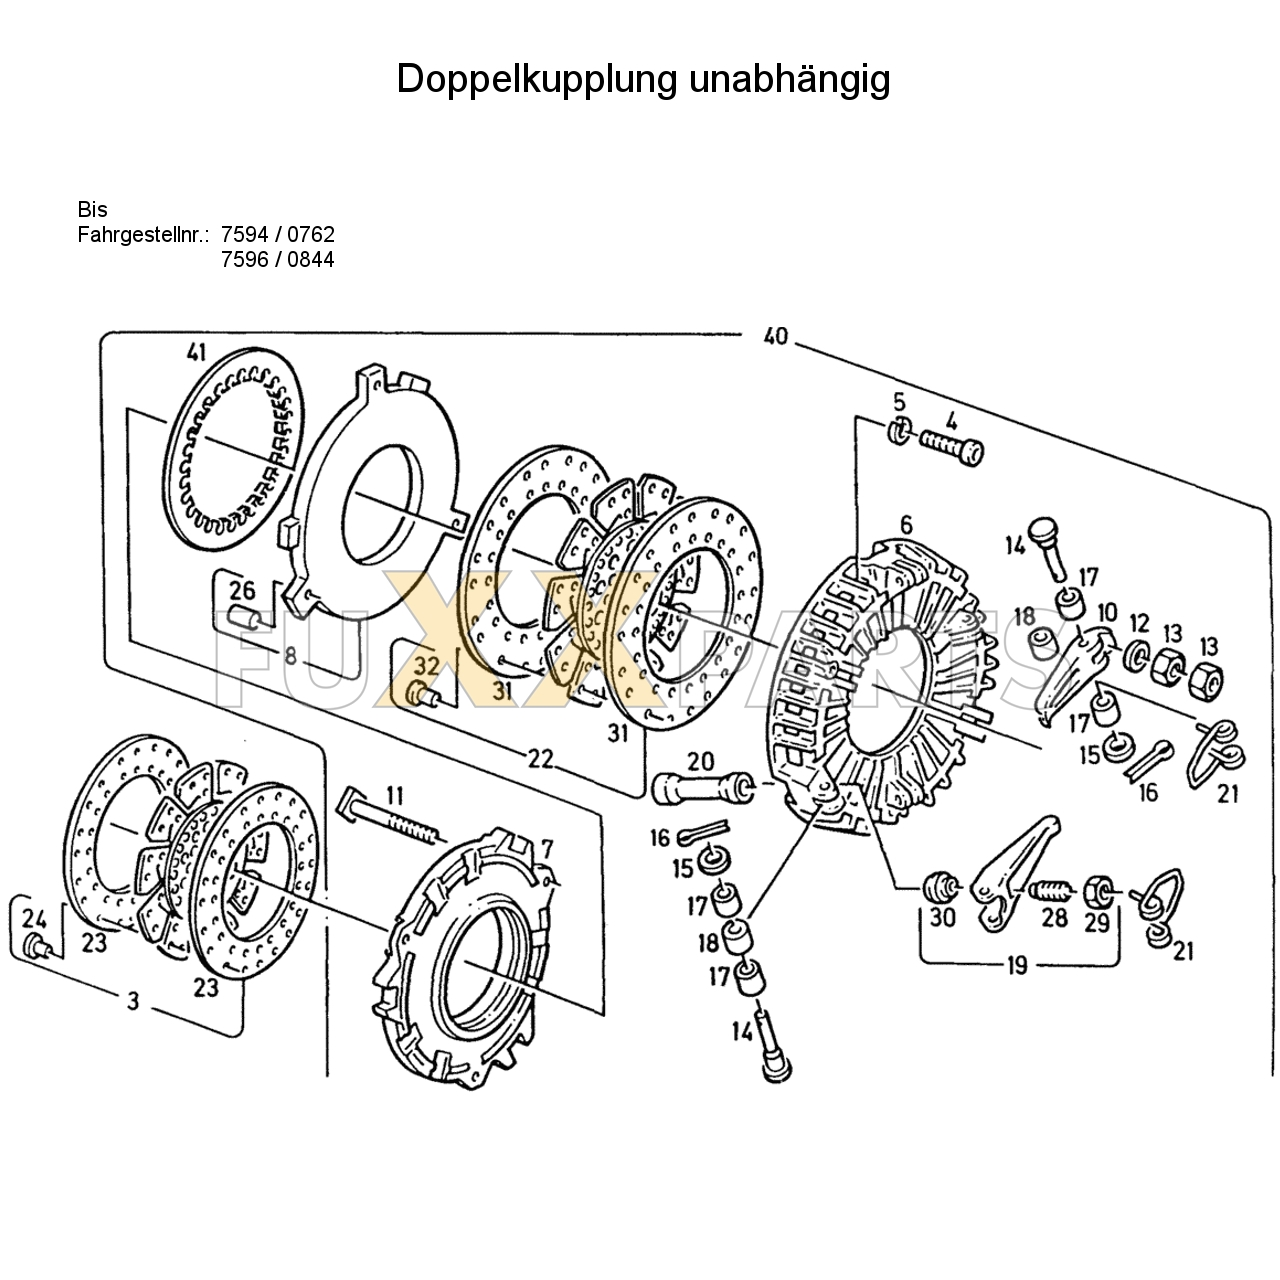 D 7807 Doppelkupplung unabhängig 1